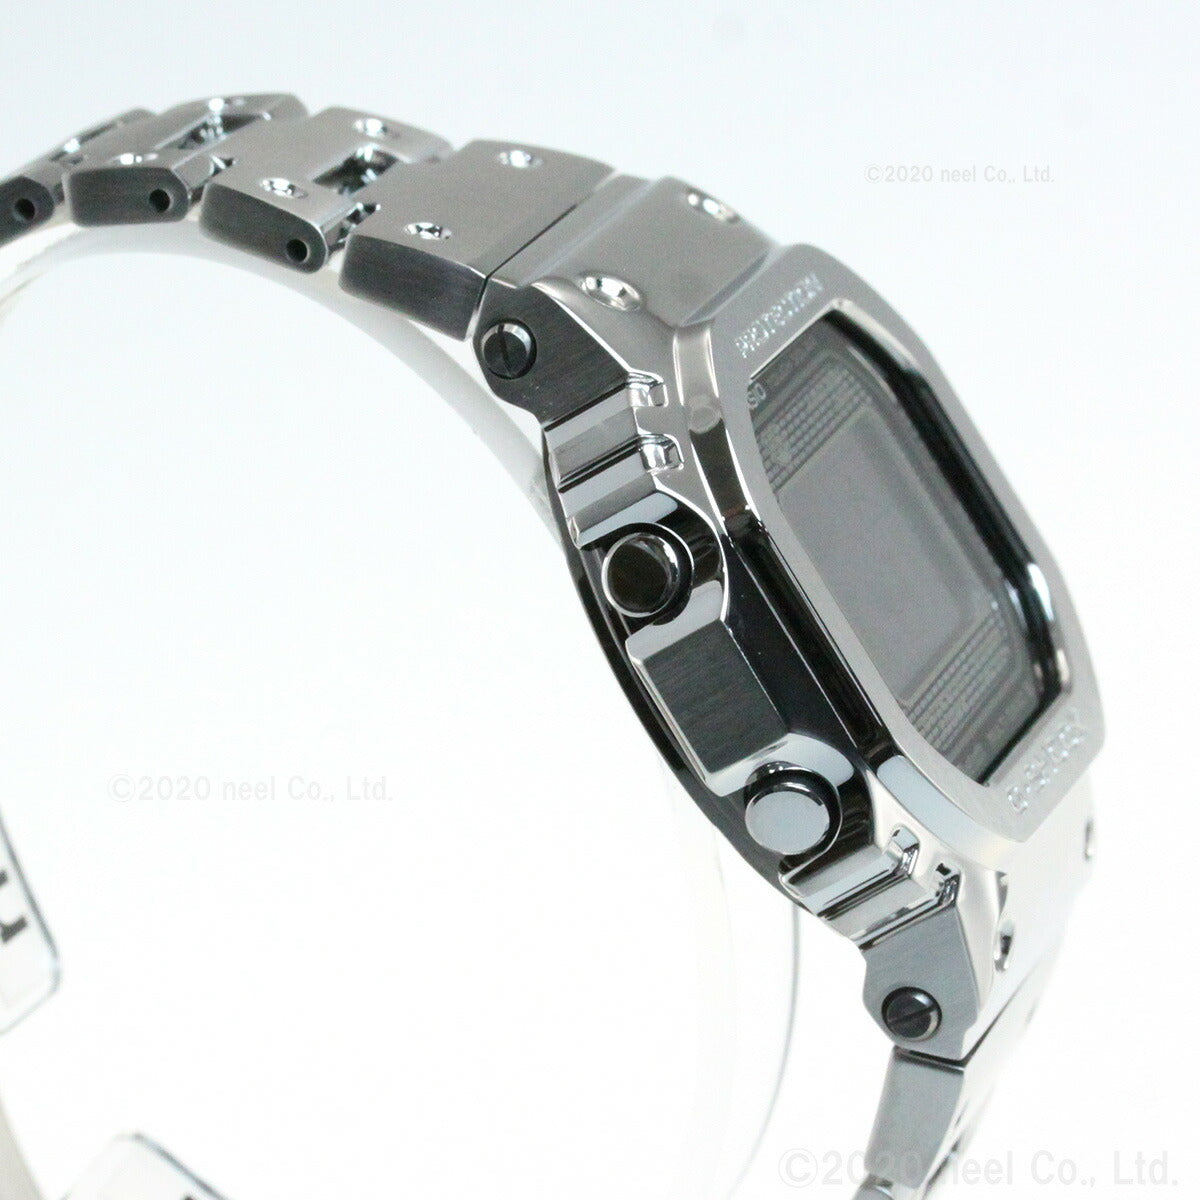 カシオ Gショック CASIO G-SHOCK デジタル ソーラー 電波時計 Bluetooth ブルートゥース 対応 腕時計 メンズ フルメタル シルバー GMW-B5000D-1JF